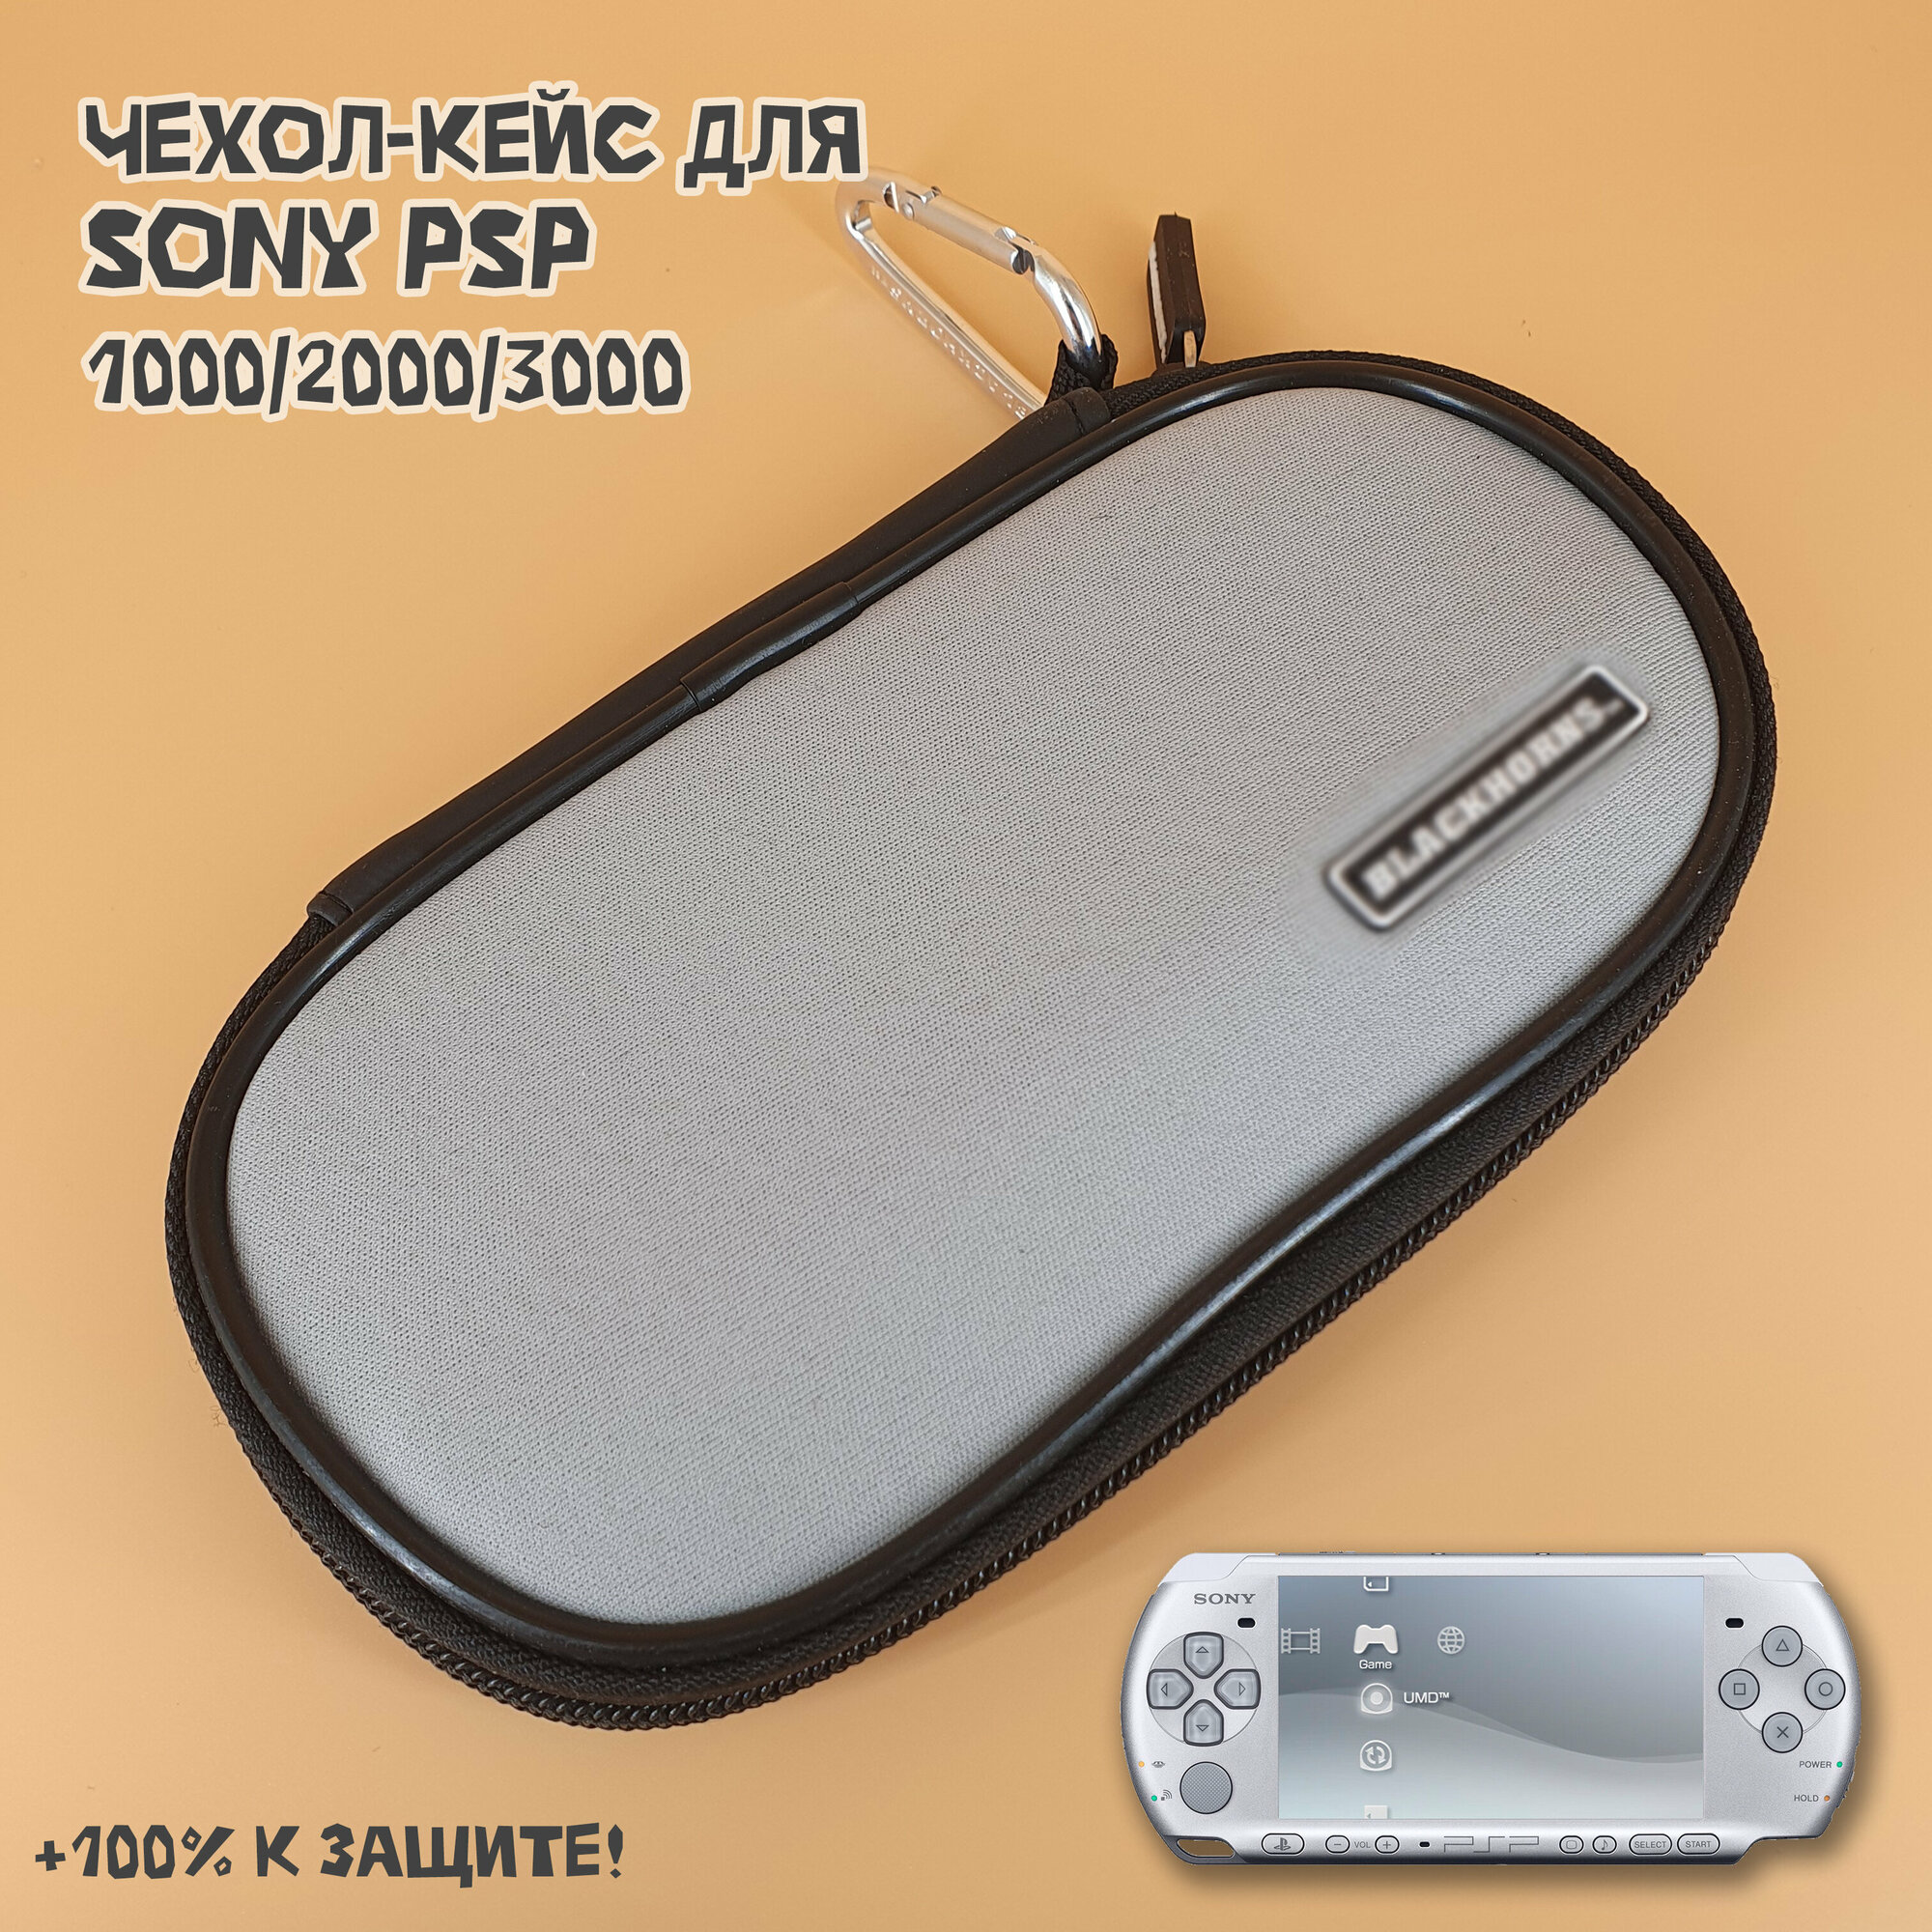 Чехол защитный для Sony PSP 1000/2000/3000, кейс для консоли и аксессуаров, на молнии, серый